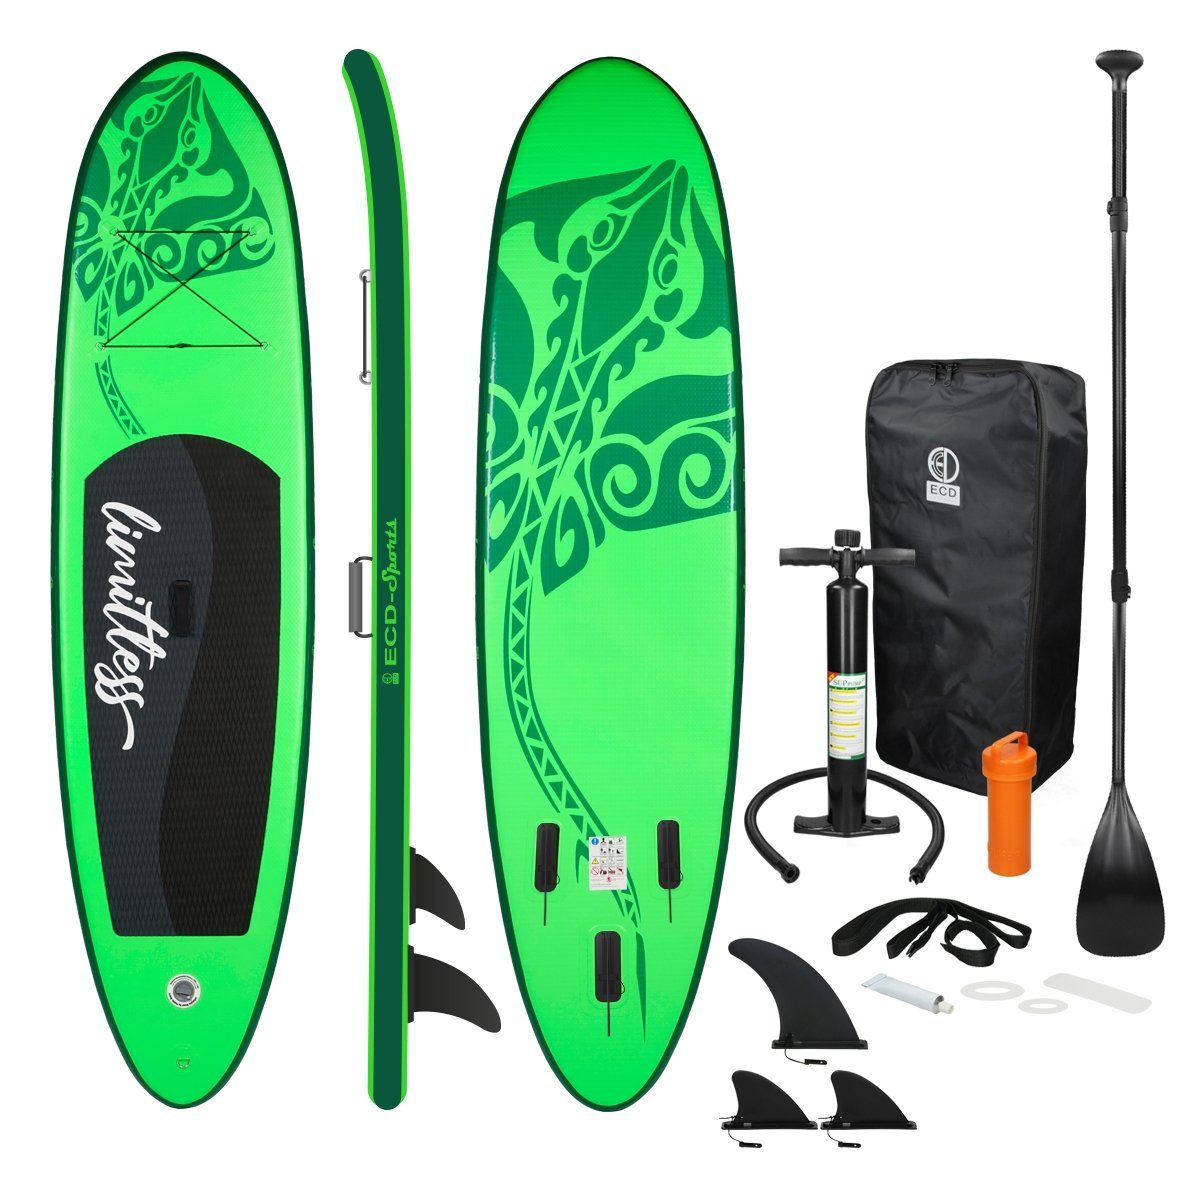 ECD Germany SUP-Board Stand Up Paddle Board aus PVC Paddelboard, Surfboard Grün 308x76x10 cm mit Anti-Rutsch Belag Komplett Set